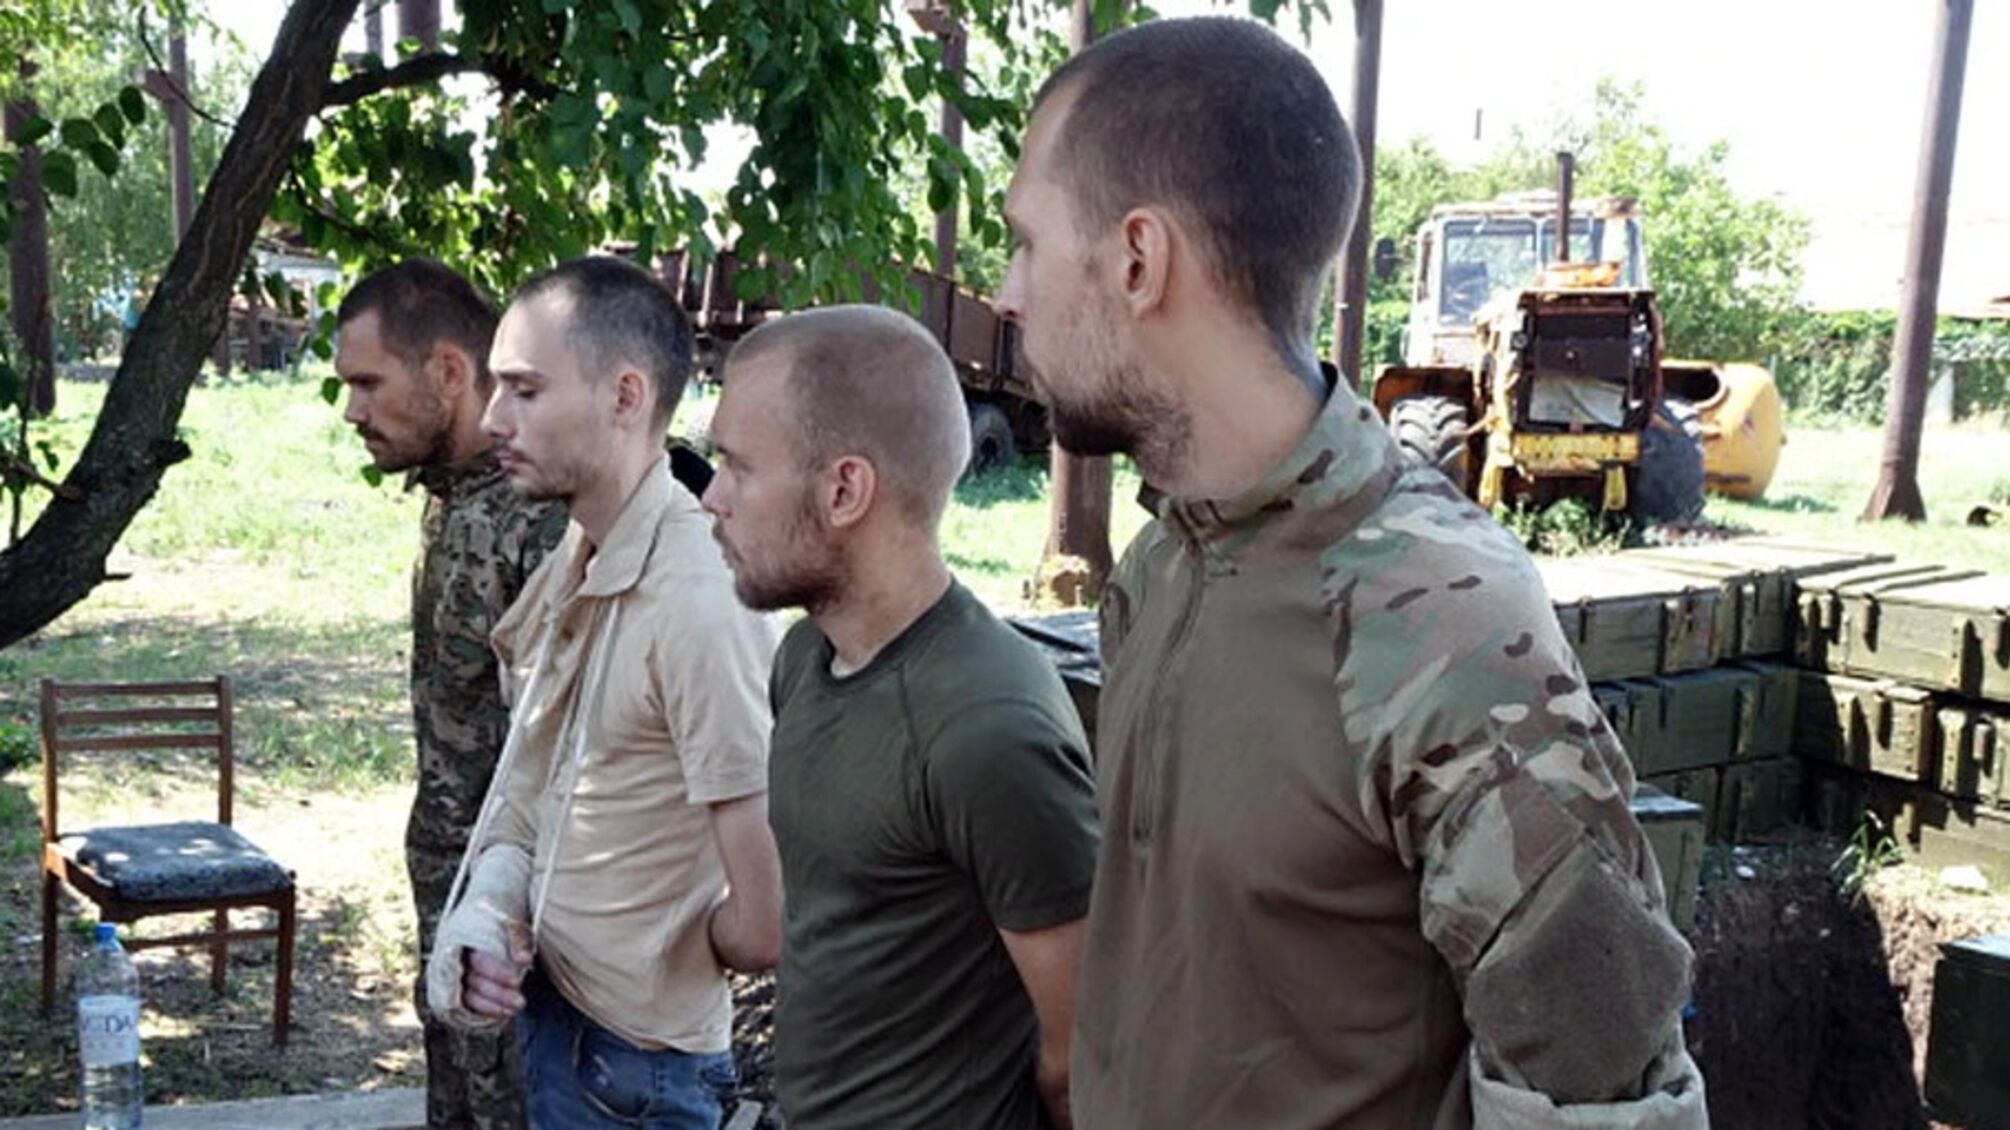 РосСМИ признали убийство военнопленных в Еленовке 'акцией устрашения'